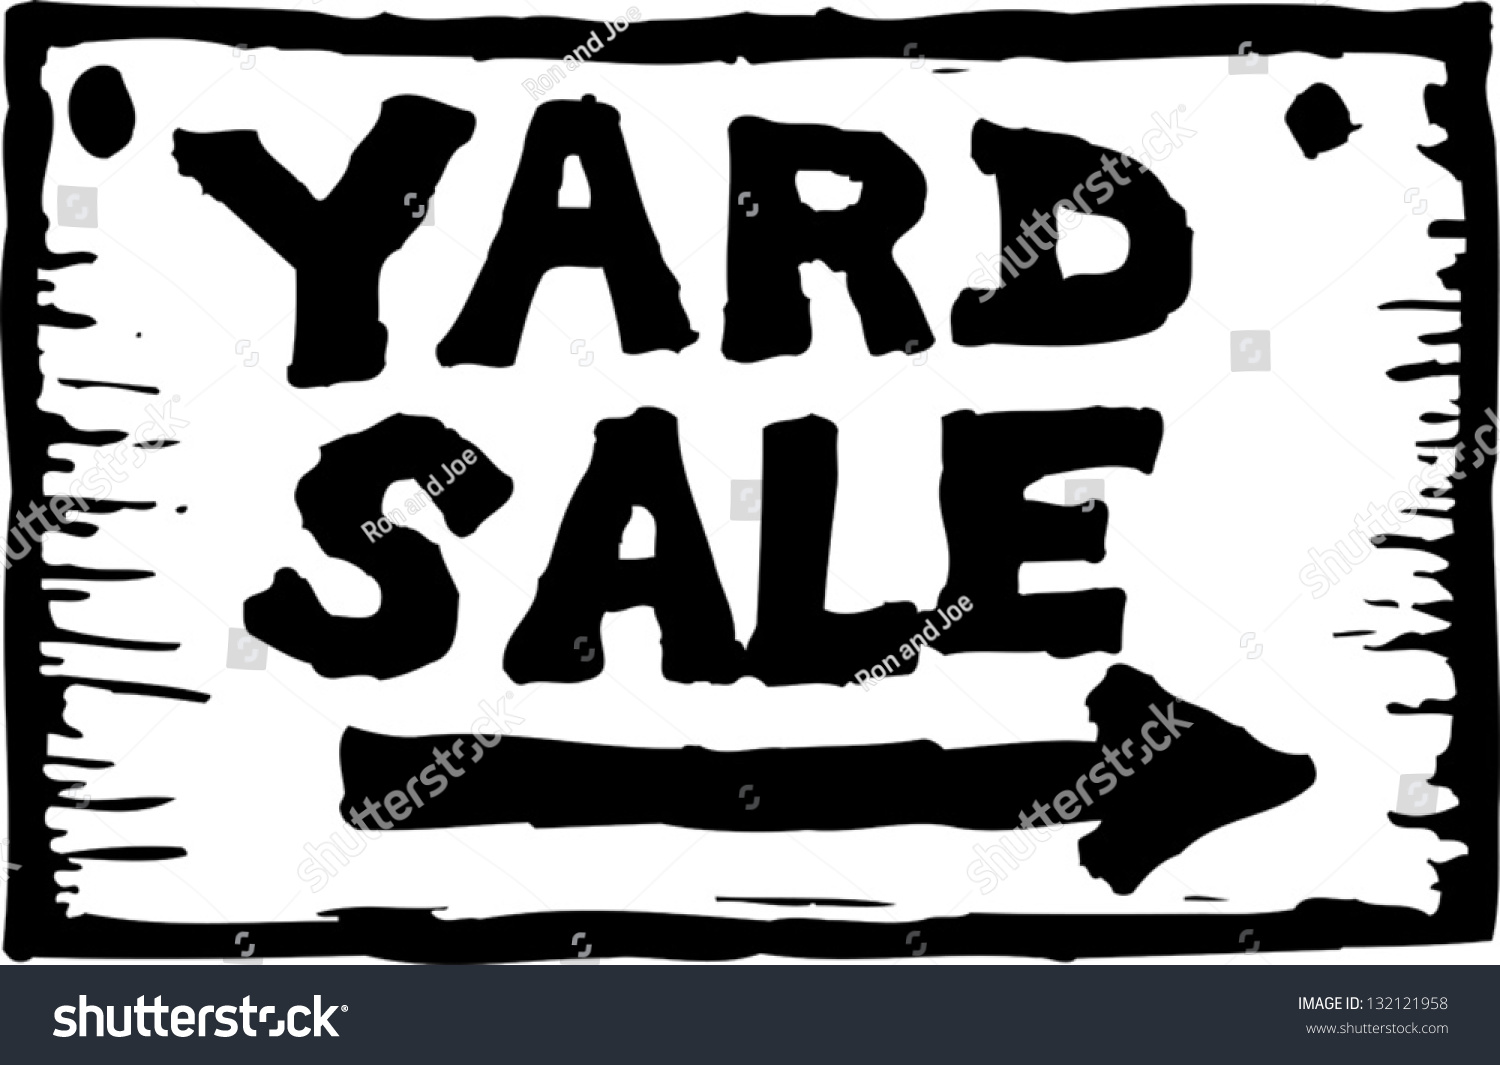 clip art yard sale sign - photo #28